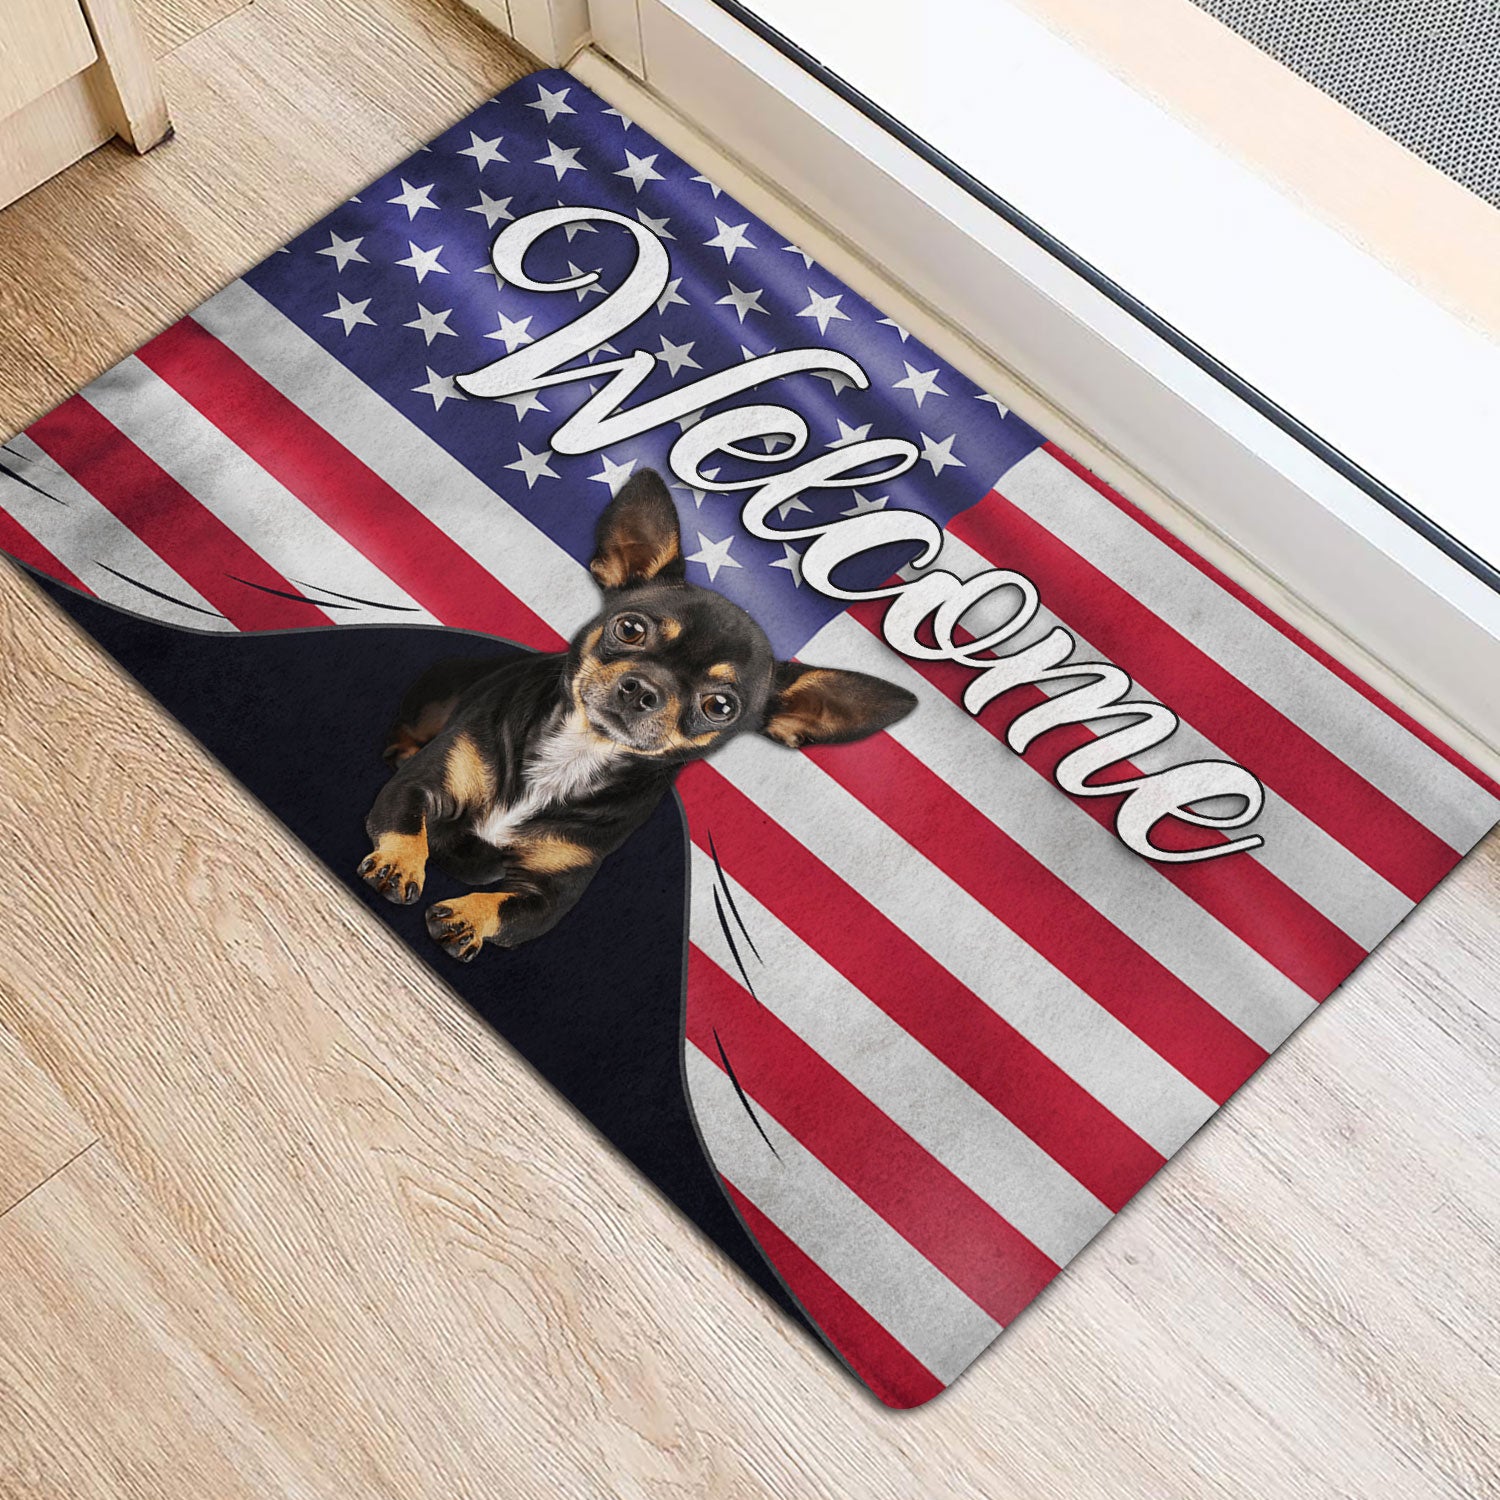 Ohaprints-Doormat-Outdoor-Indoor-Funny-Chihuahua-Dog-Welcome-American-Flag-Usa-Patriotic-Rubber-Door-Mat-82-